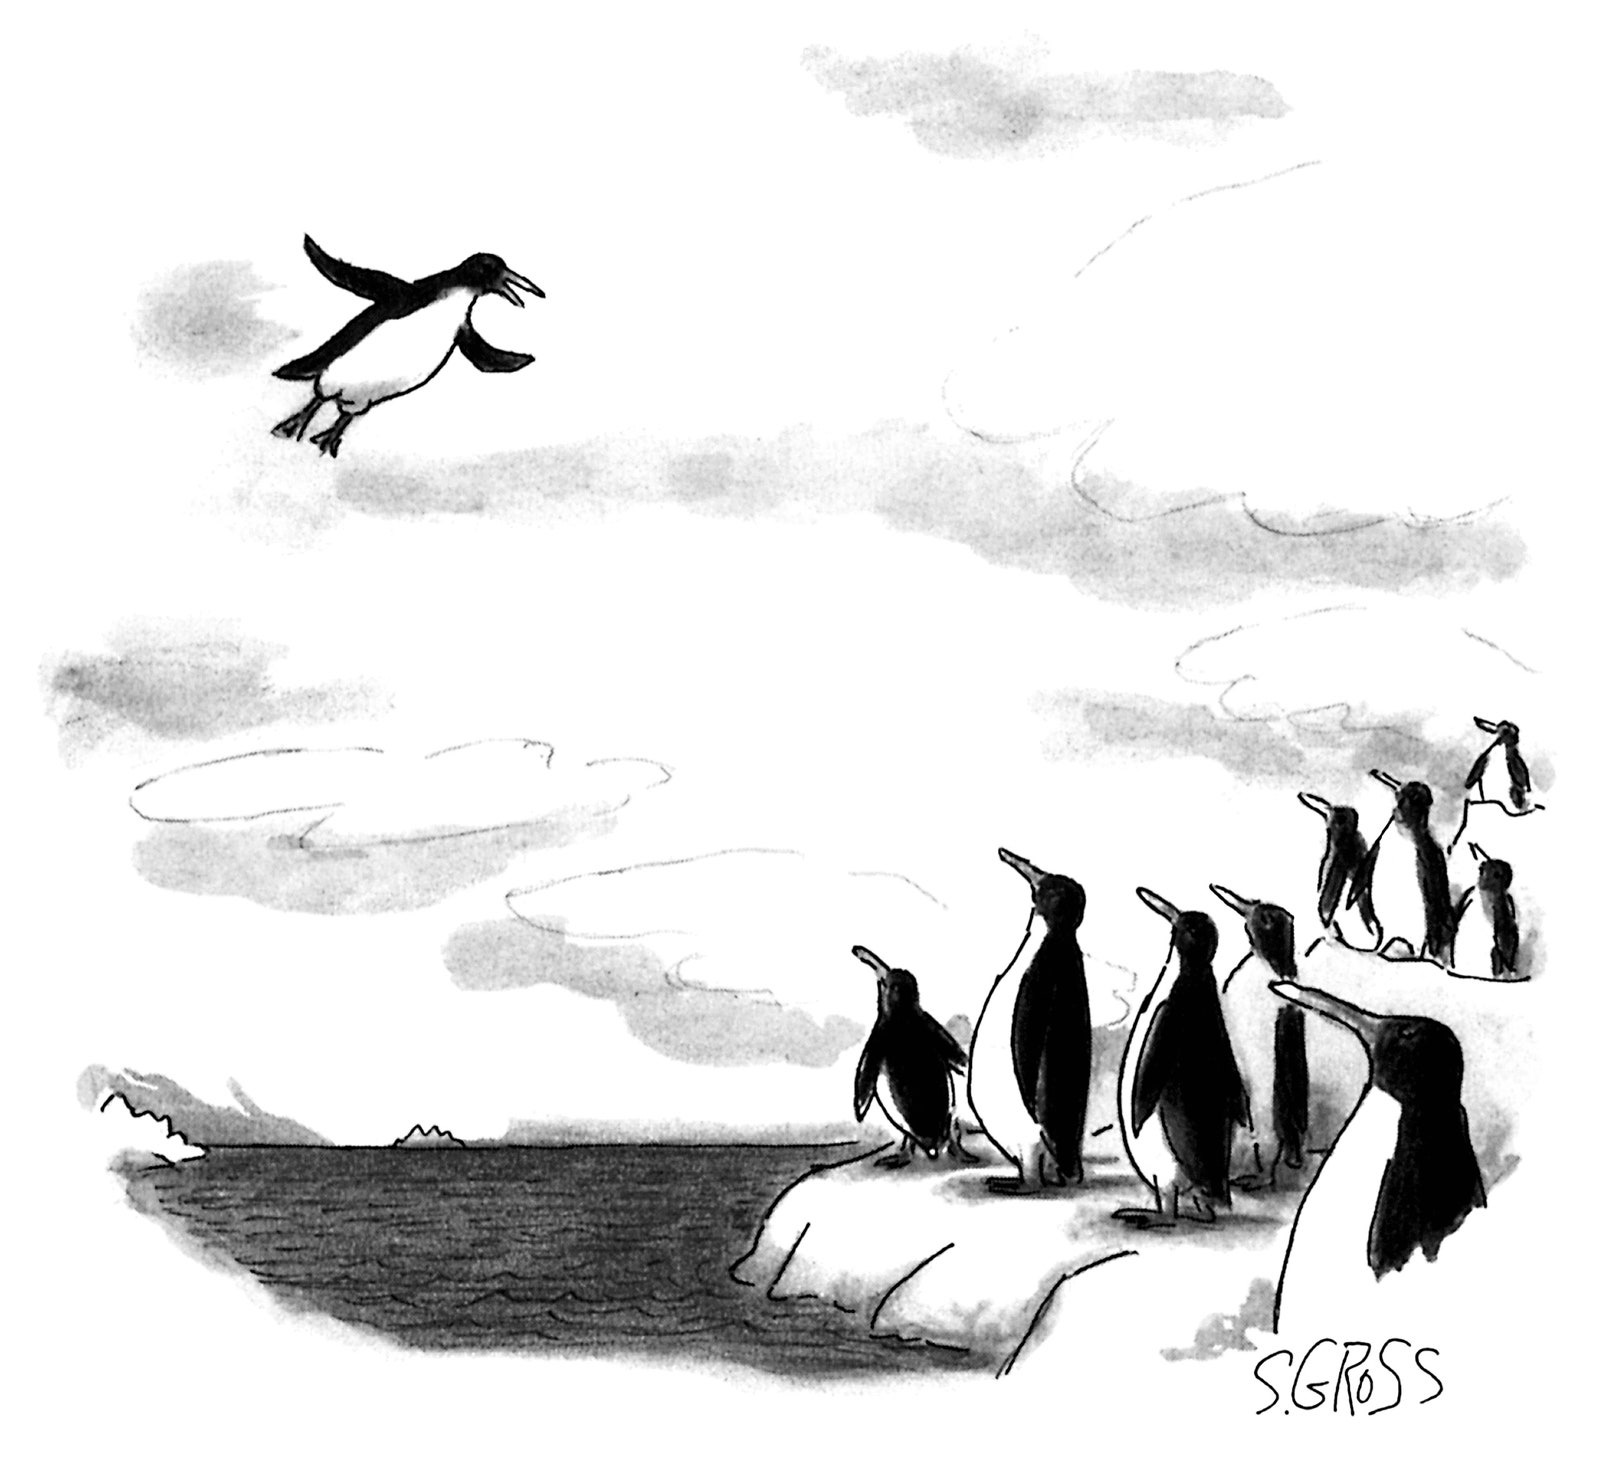 Eine Gruppe Pinguine blickt zu einem fliegenden Pinguin auf.